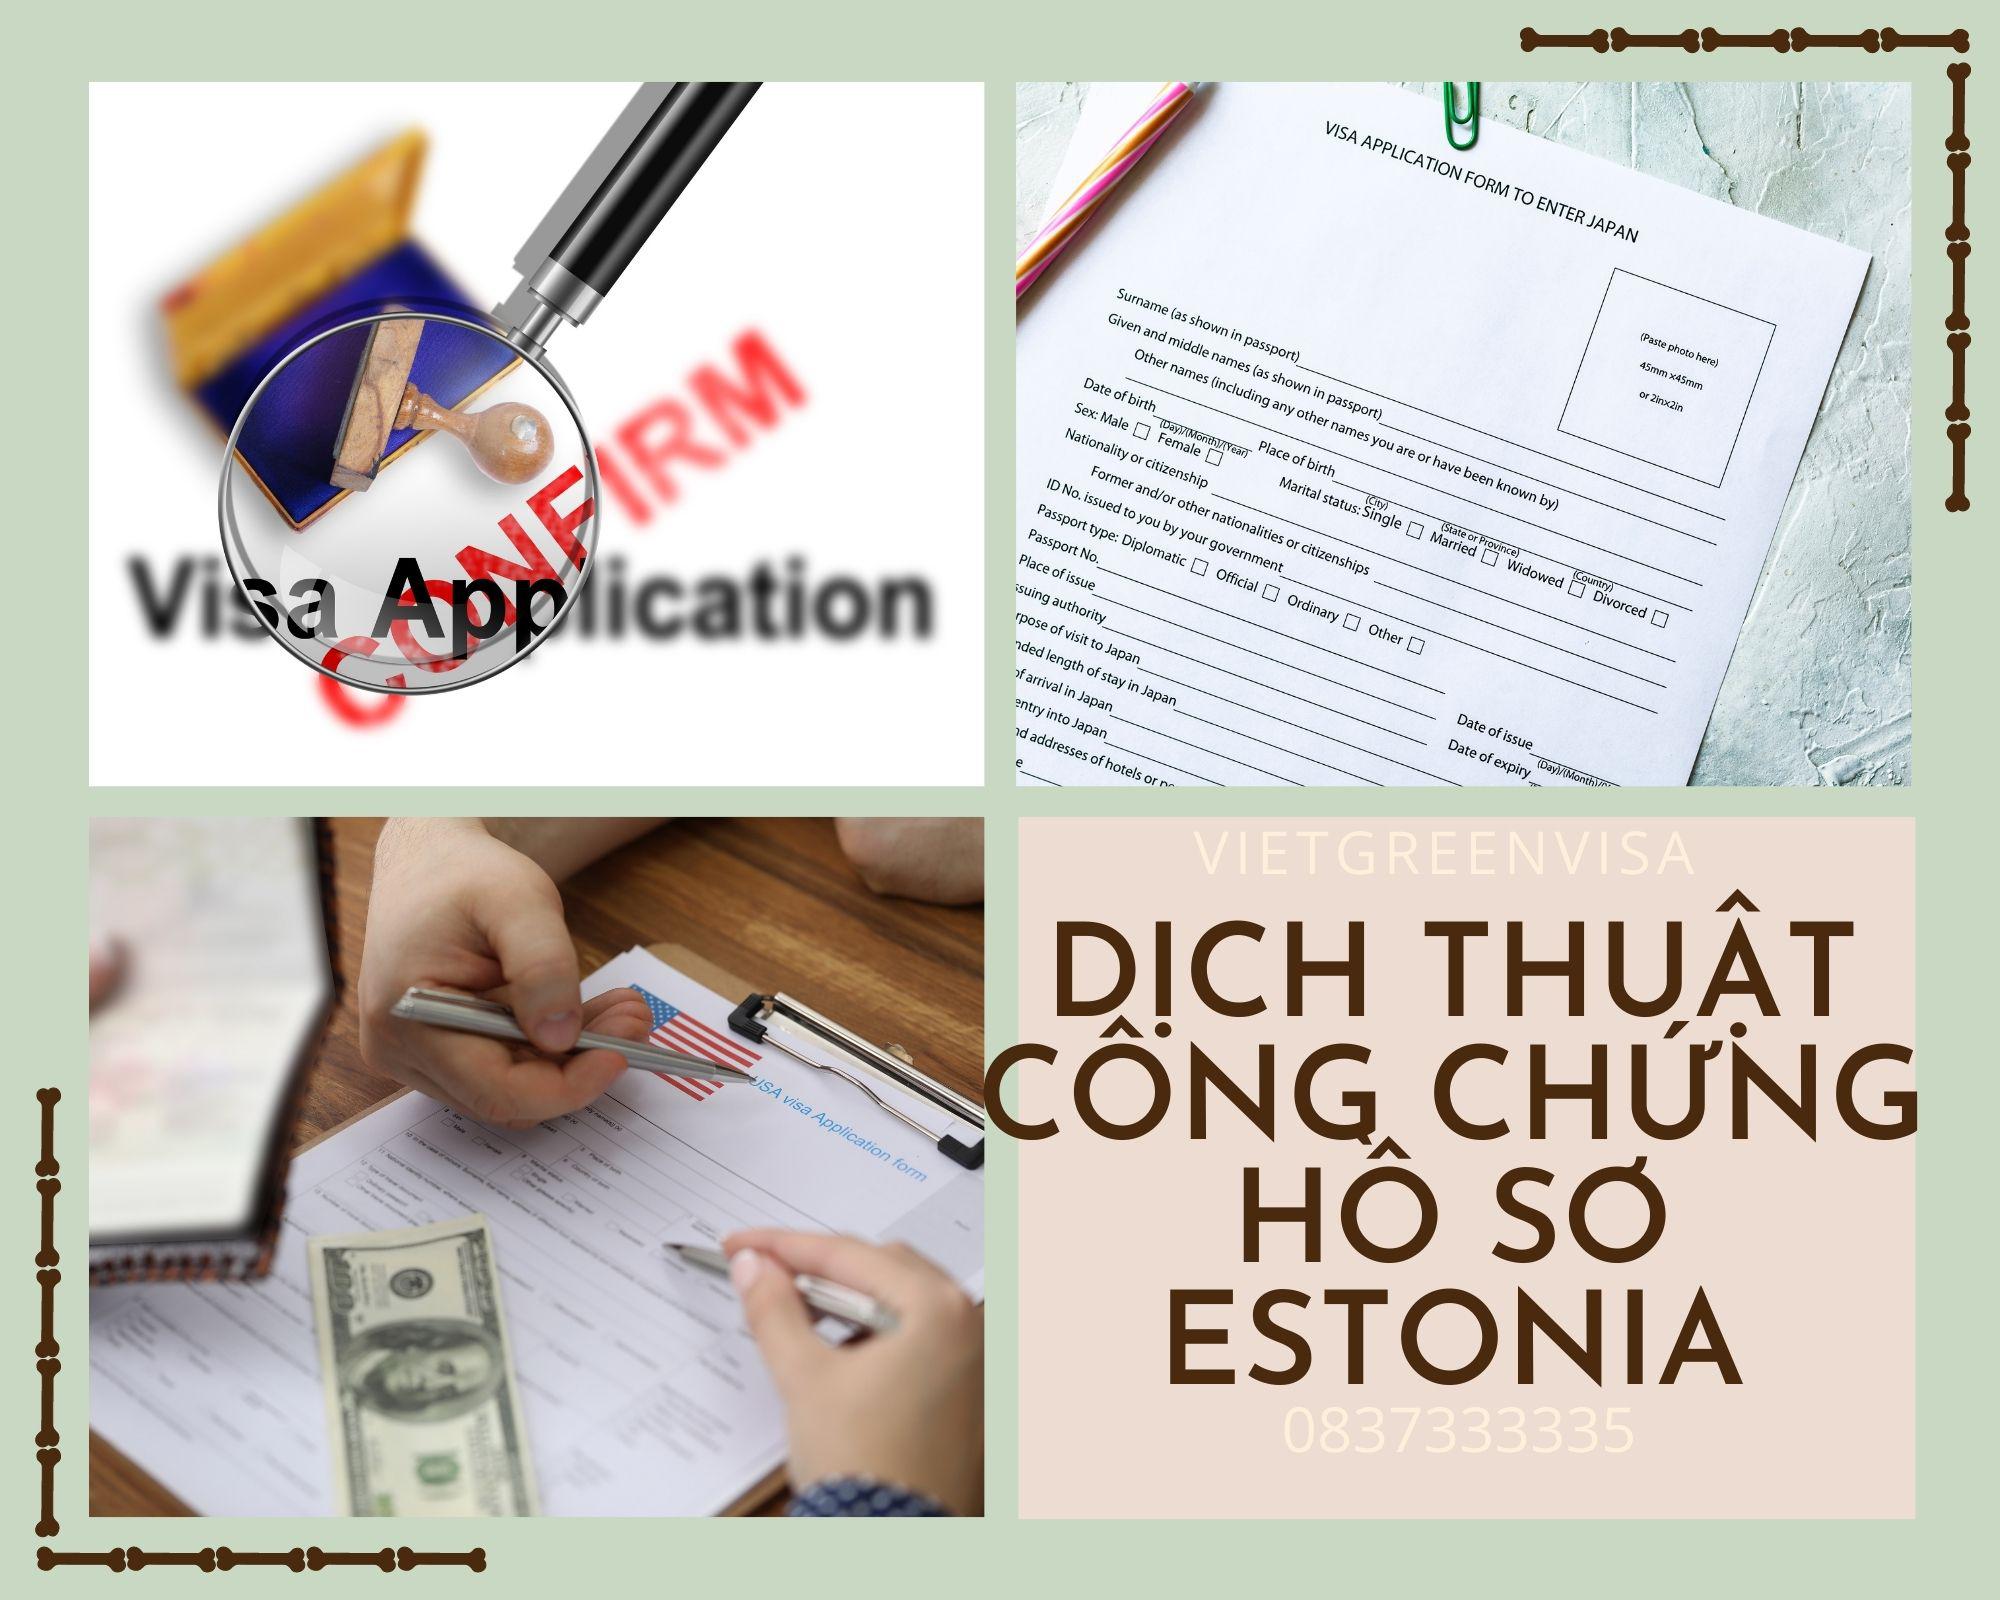 Dịch thuật công chứng hồ sơ visa Estonia nhanh chóng